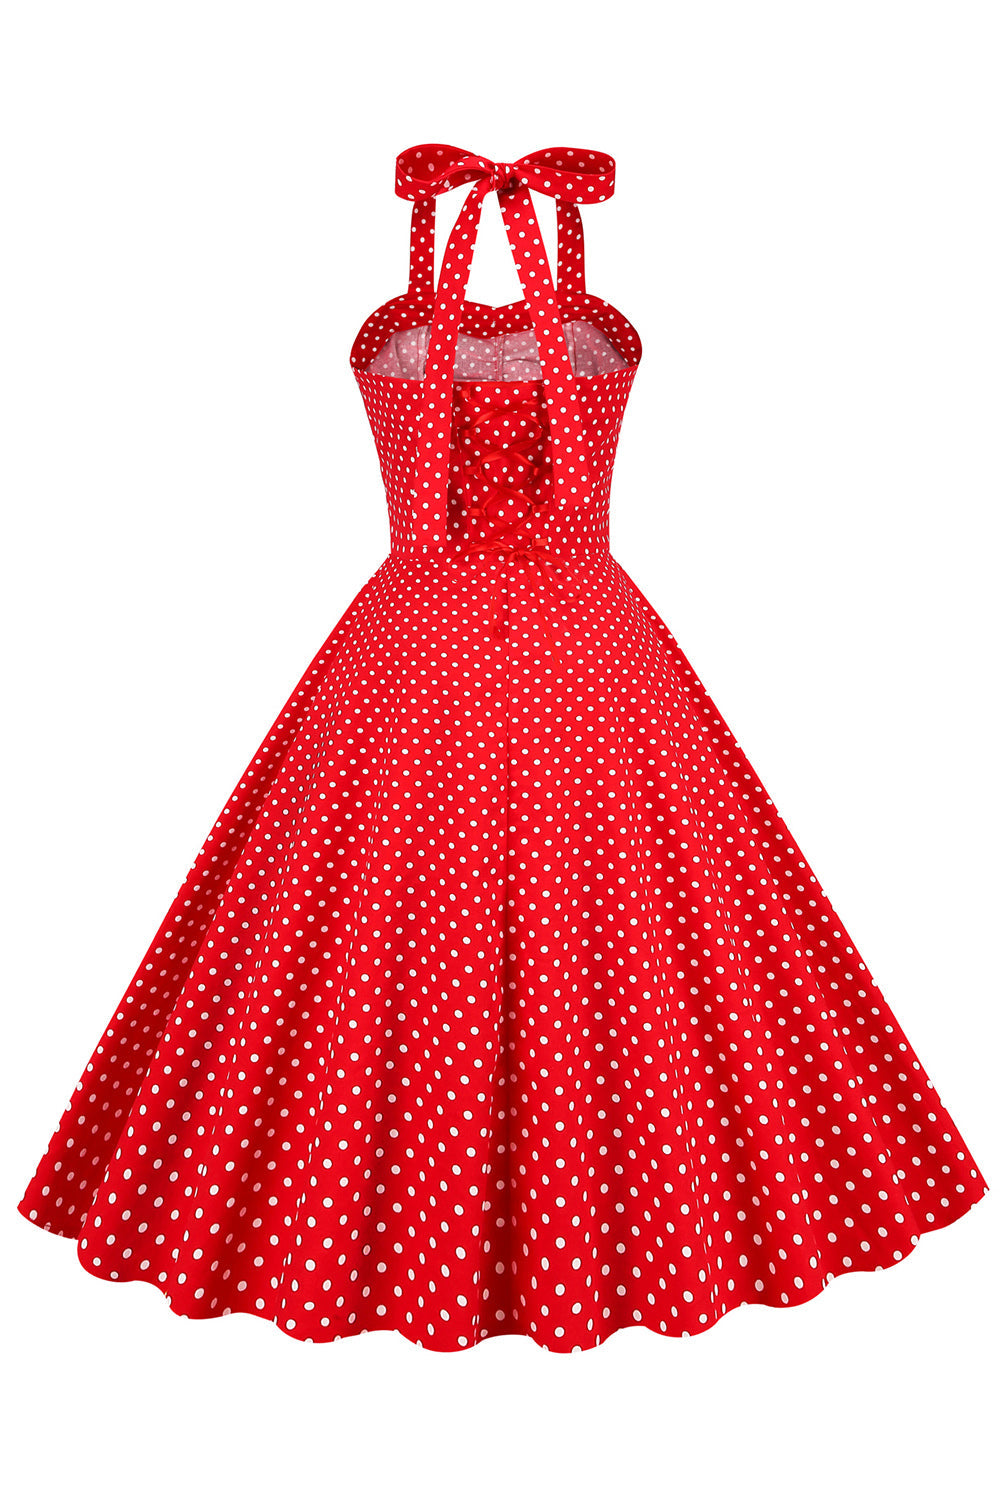 Robe Rouge à Pois Vintage des années 50